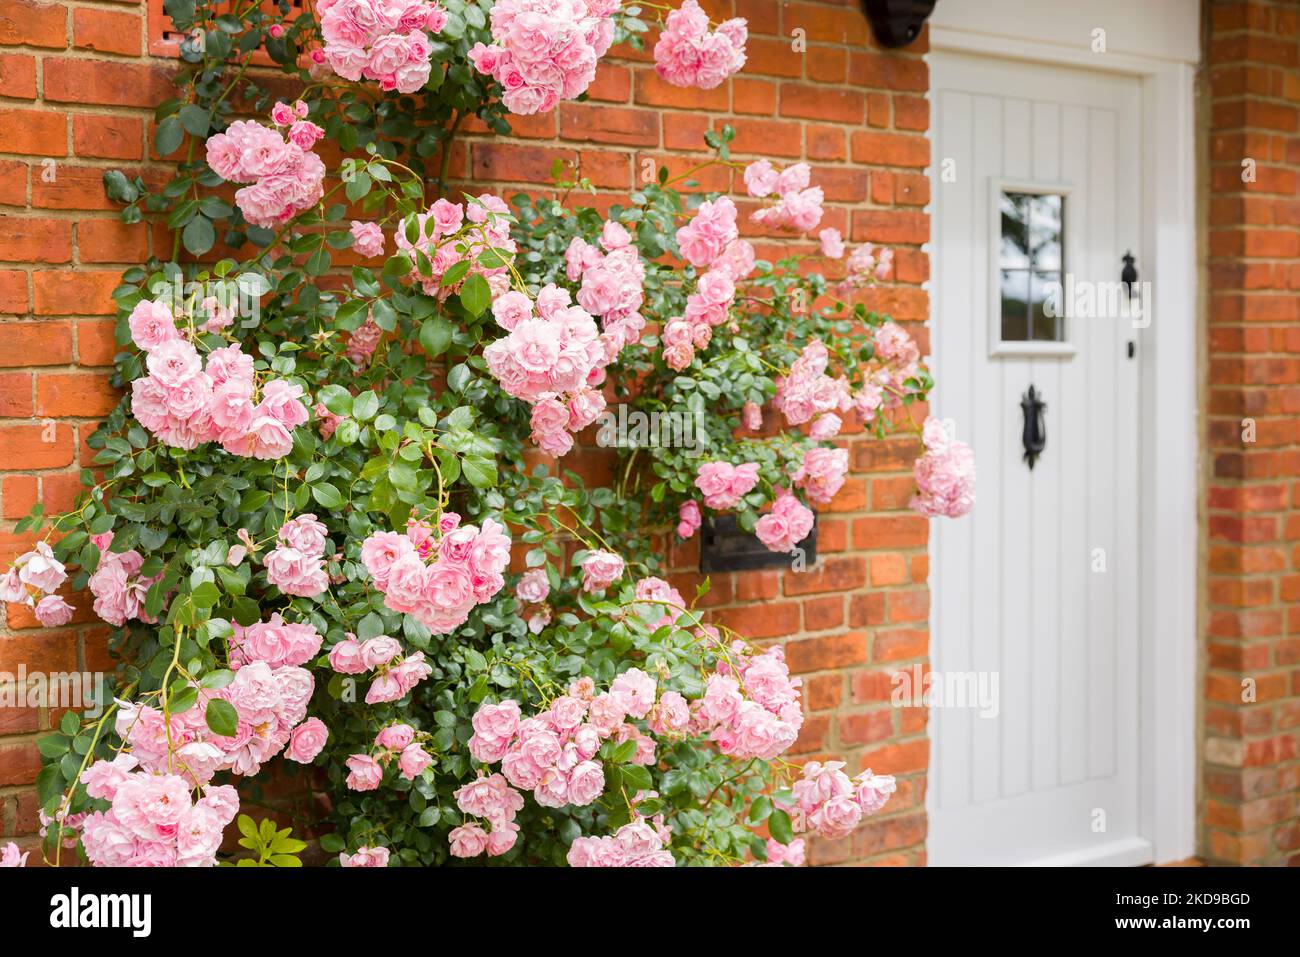 Rosa arrampicata crescere fuori casa in Inghilterra, Regno Unito, con parete in mattoni e porta anteriore Foto Stock